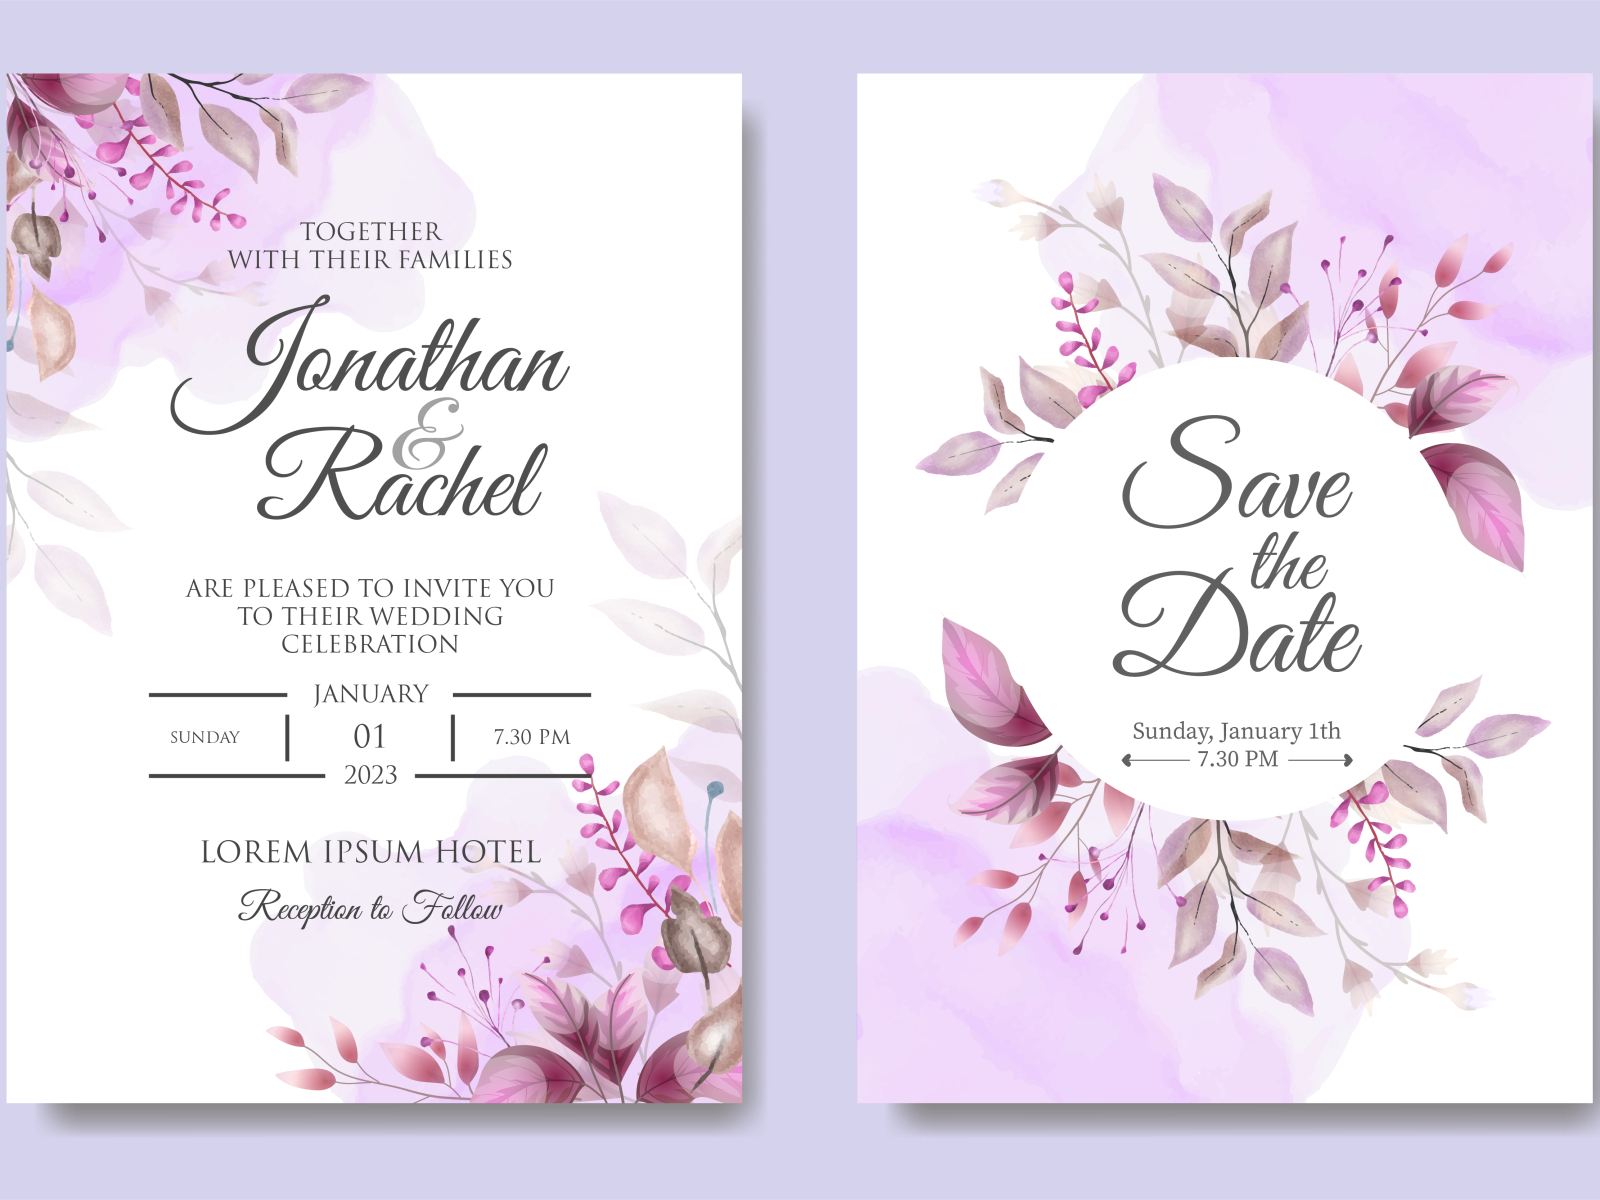 Purple Wedding Invitation Templates